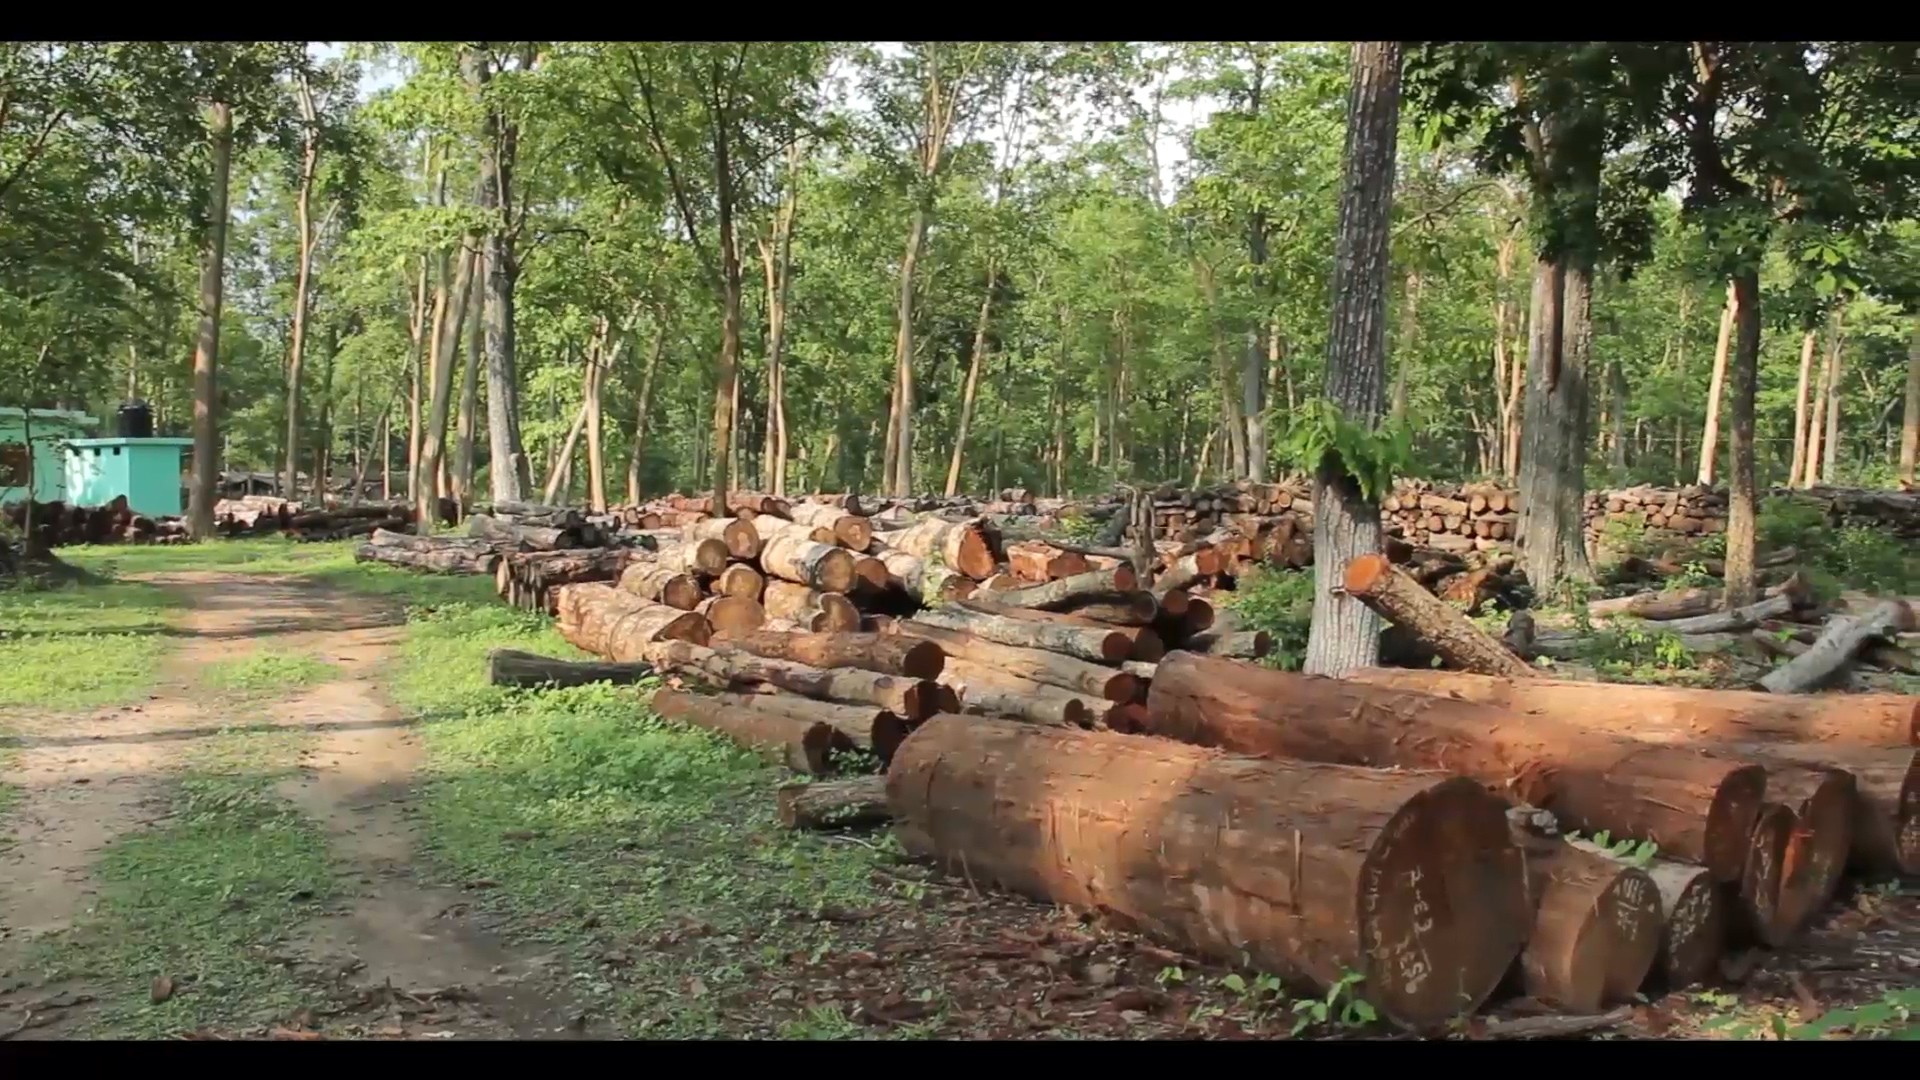 वैज्ञानिक वन व्यवस्थापनको नाममा कर्मचारी, ठेकेदार र वनका पदाधिकारी मिलेर वन सखाप (भिडियो सहित)